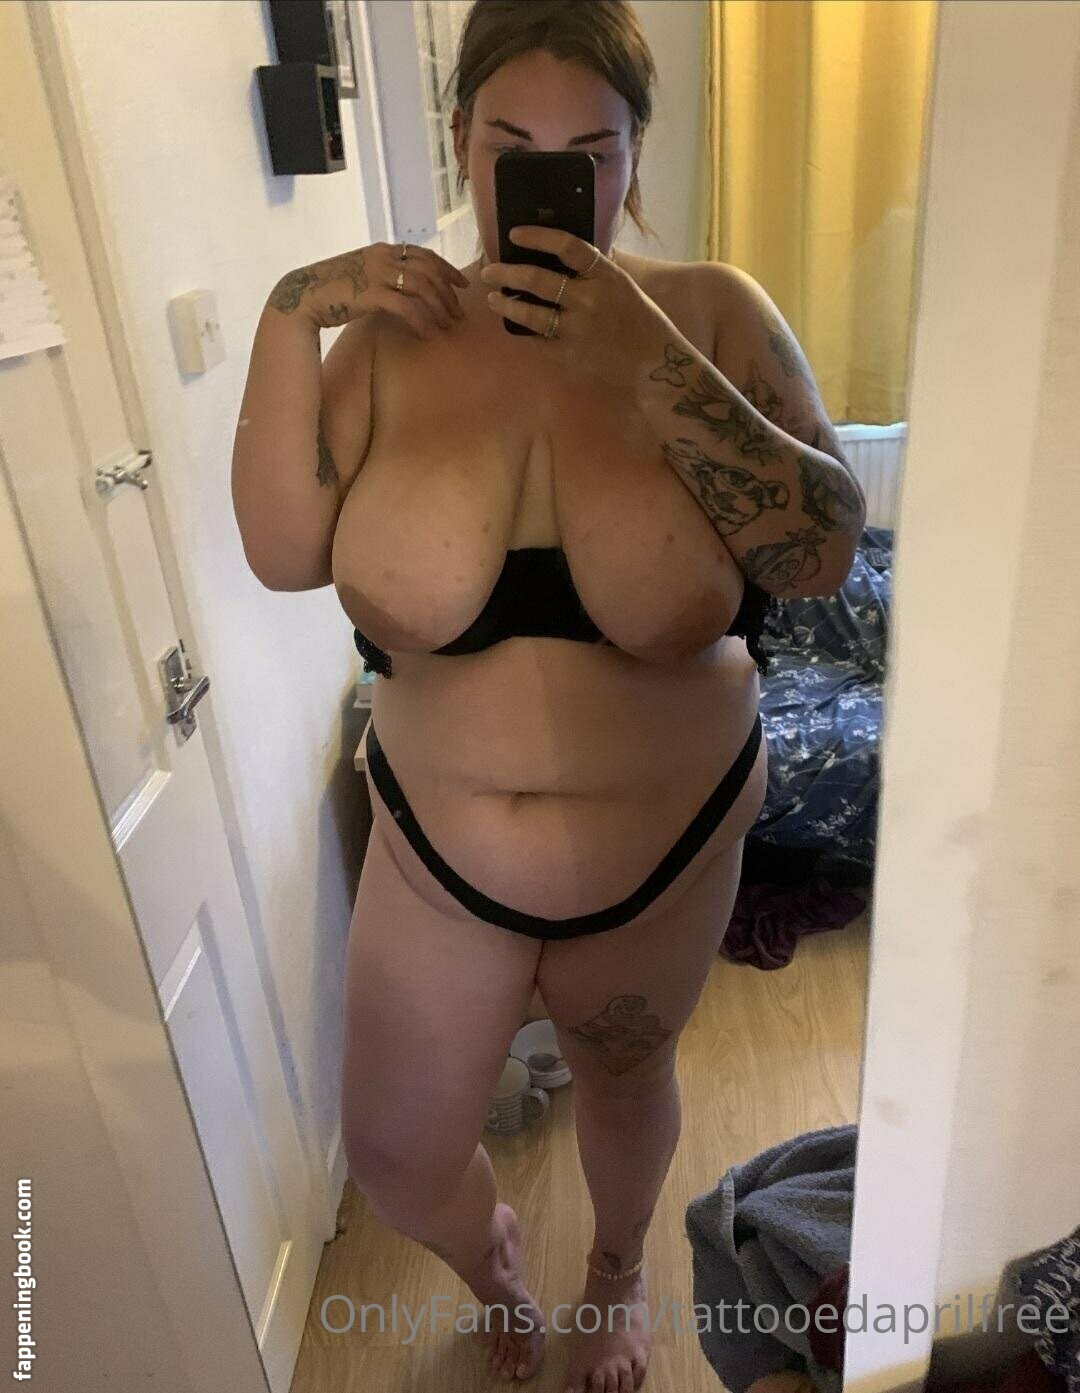 tattooedaprilfree Nude OnlyFans Leaks